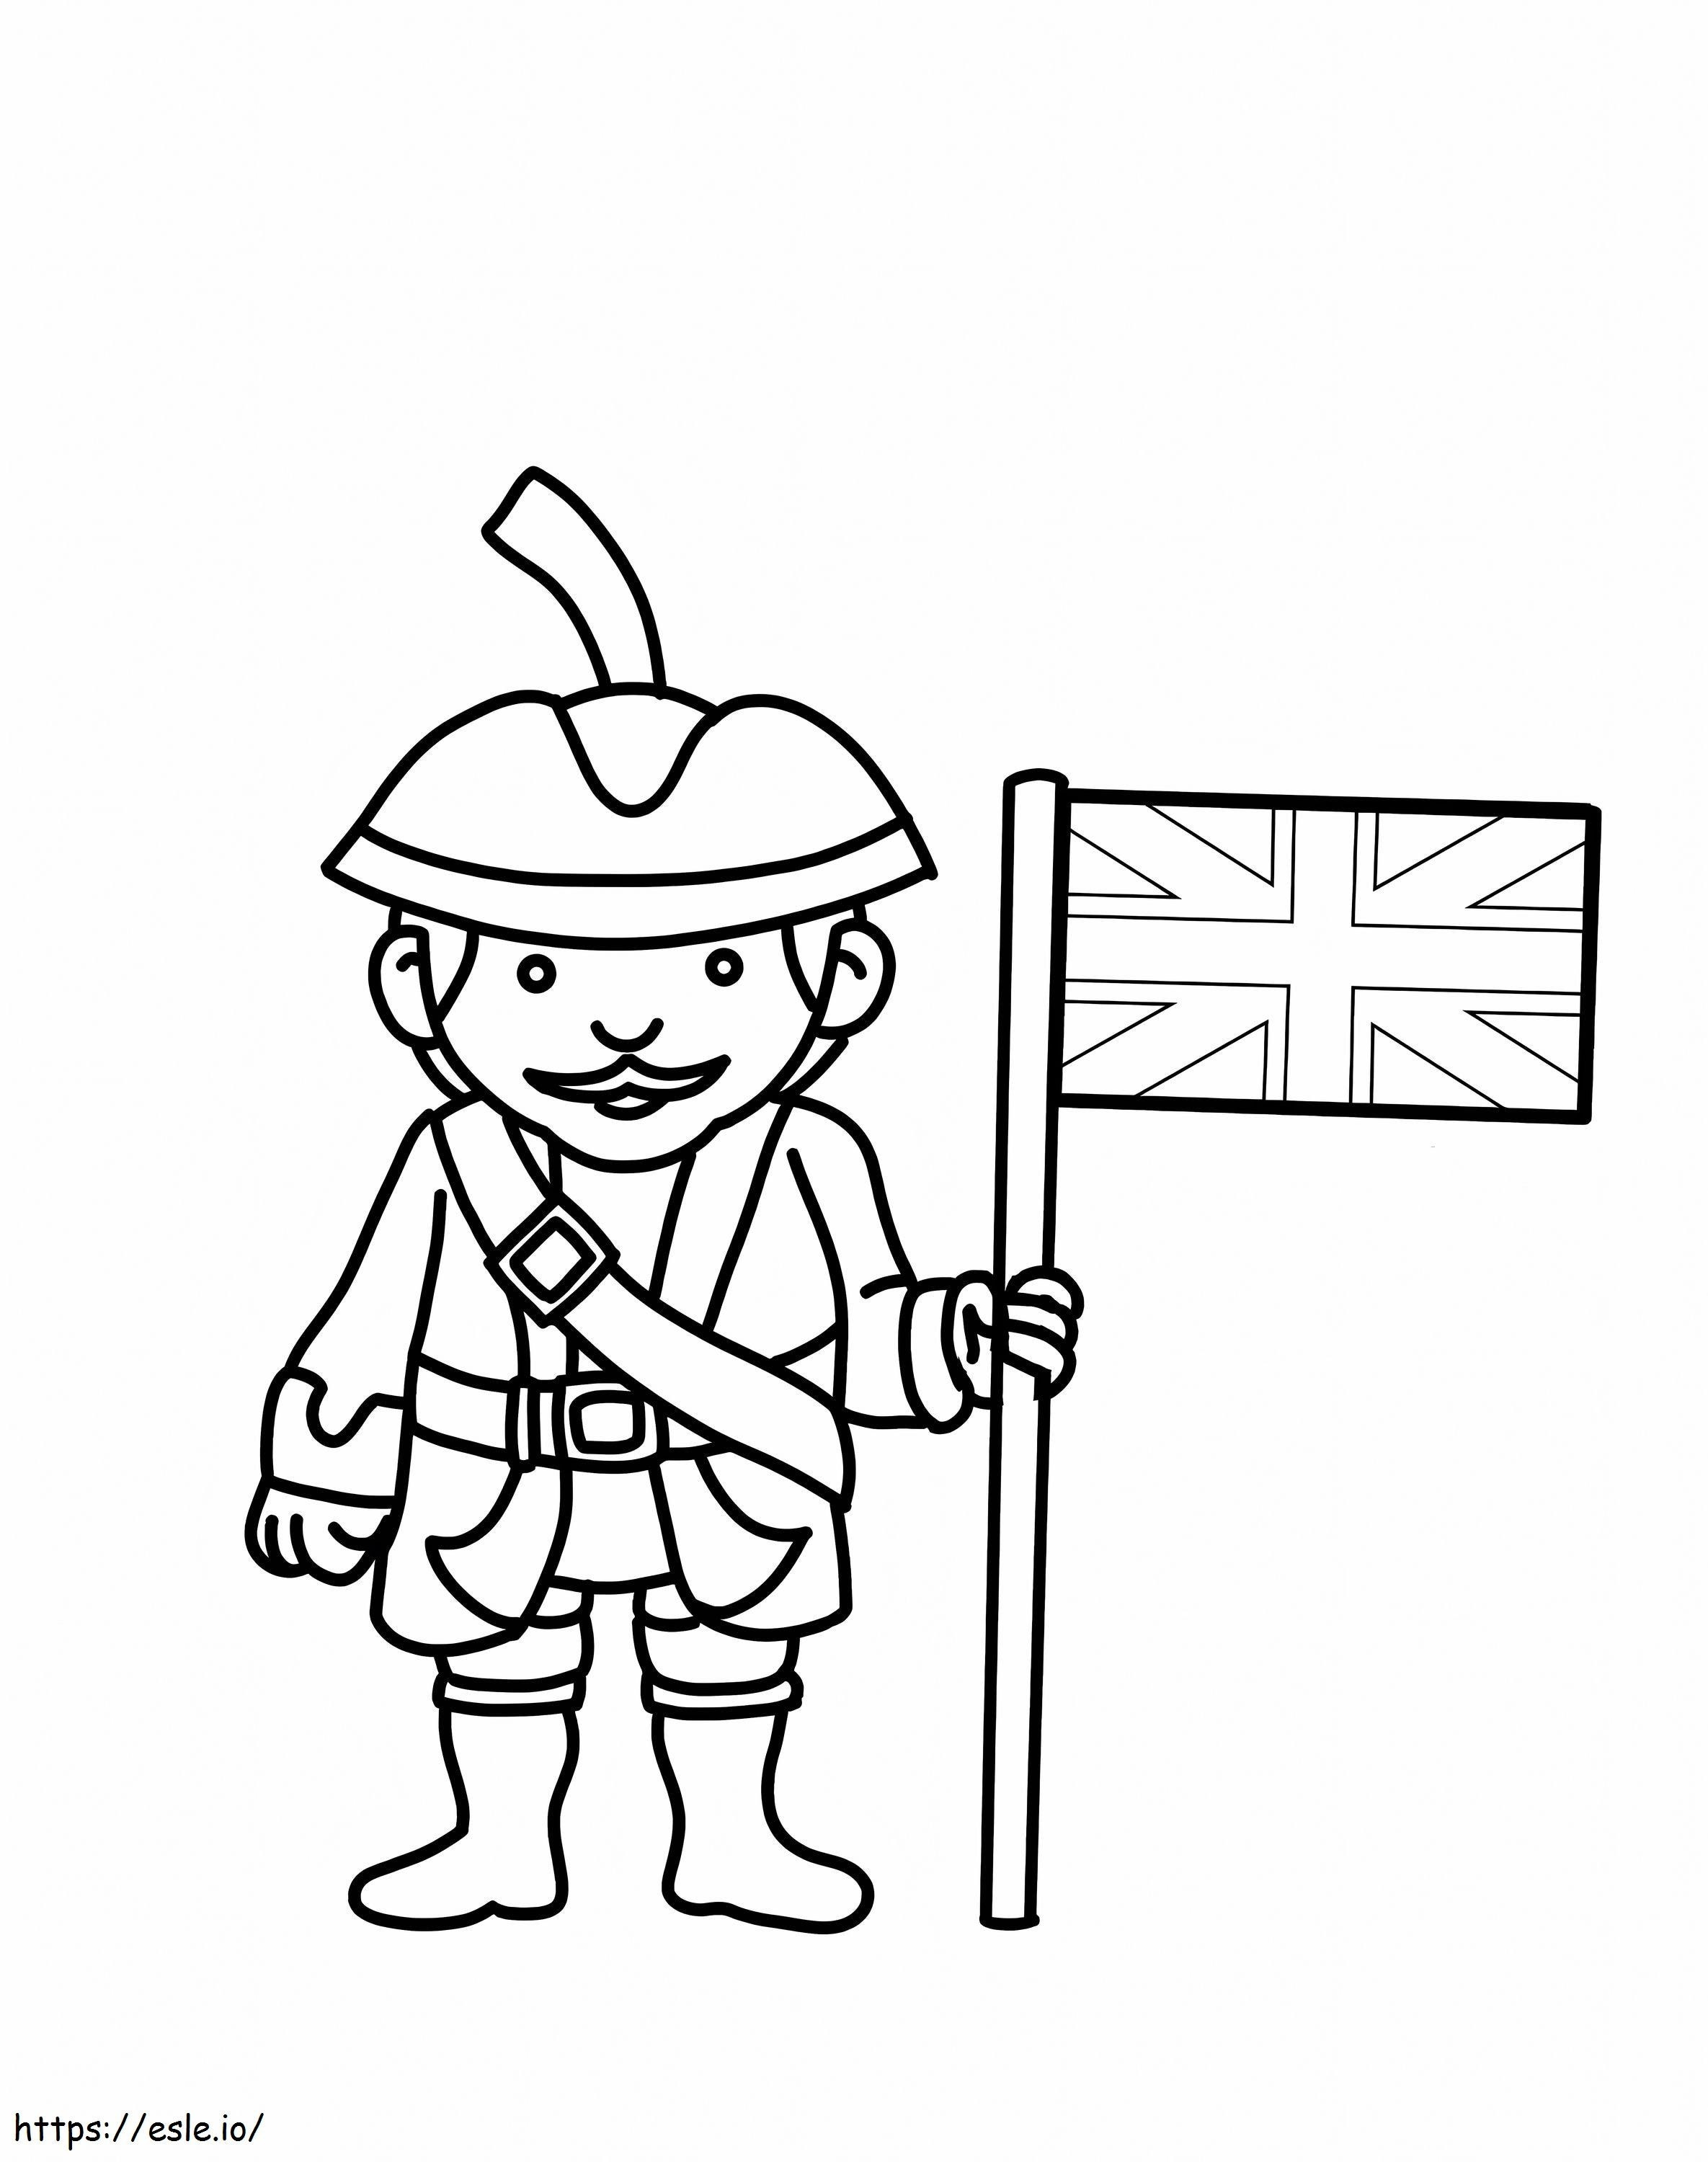 Soldato britannico da colorare